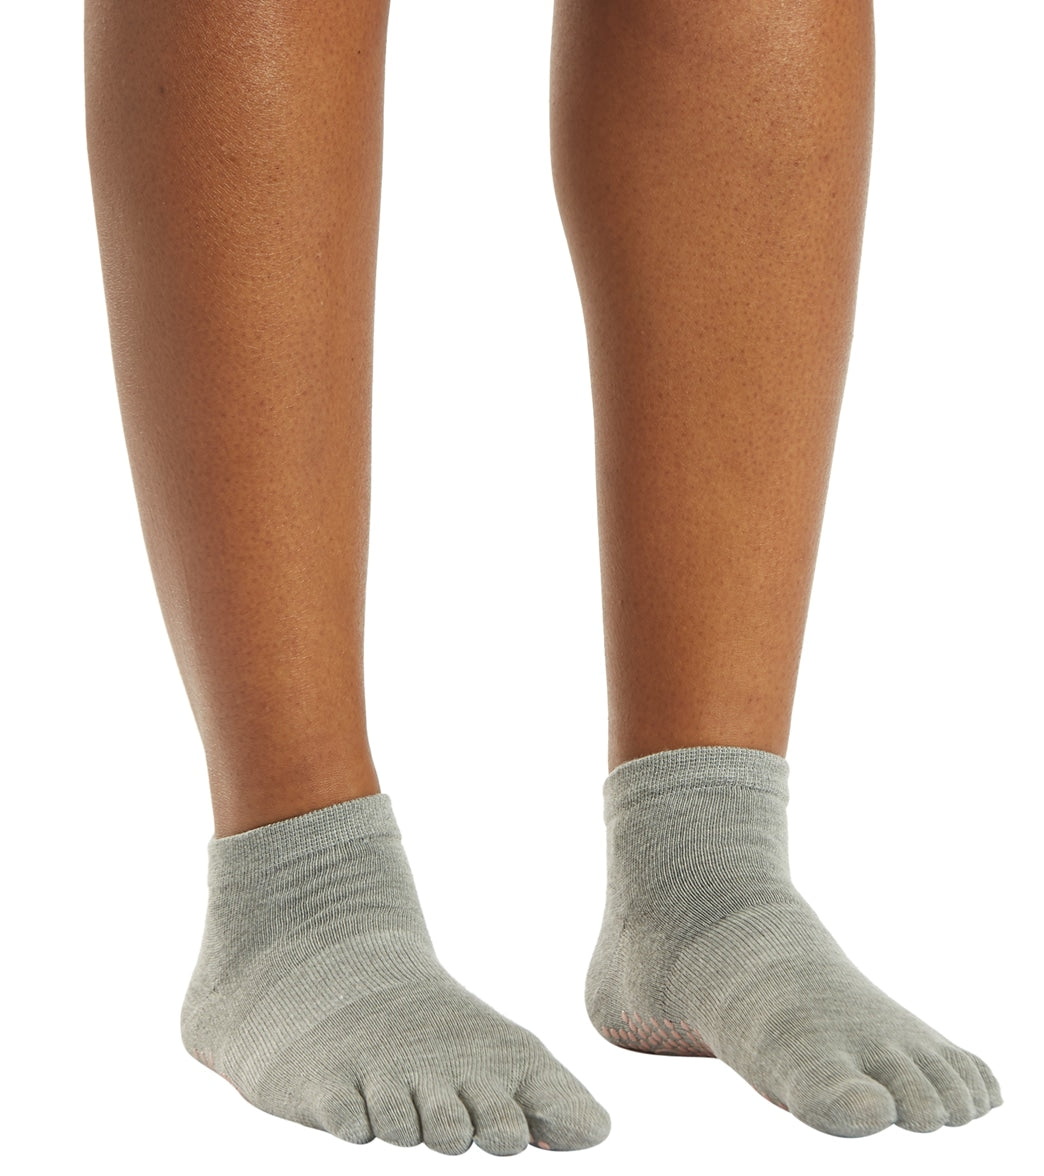 Gaiam Grippy Yoga Socks at